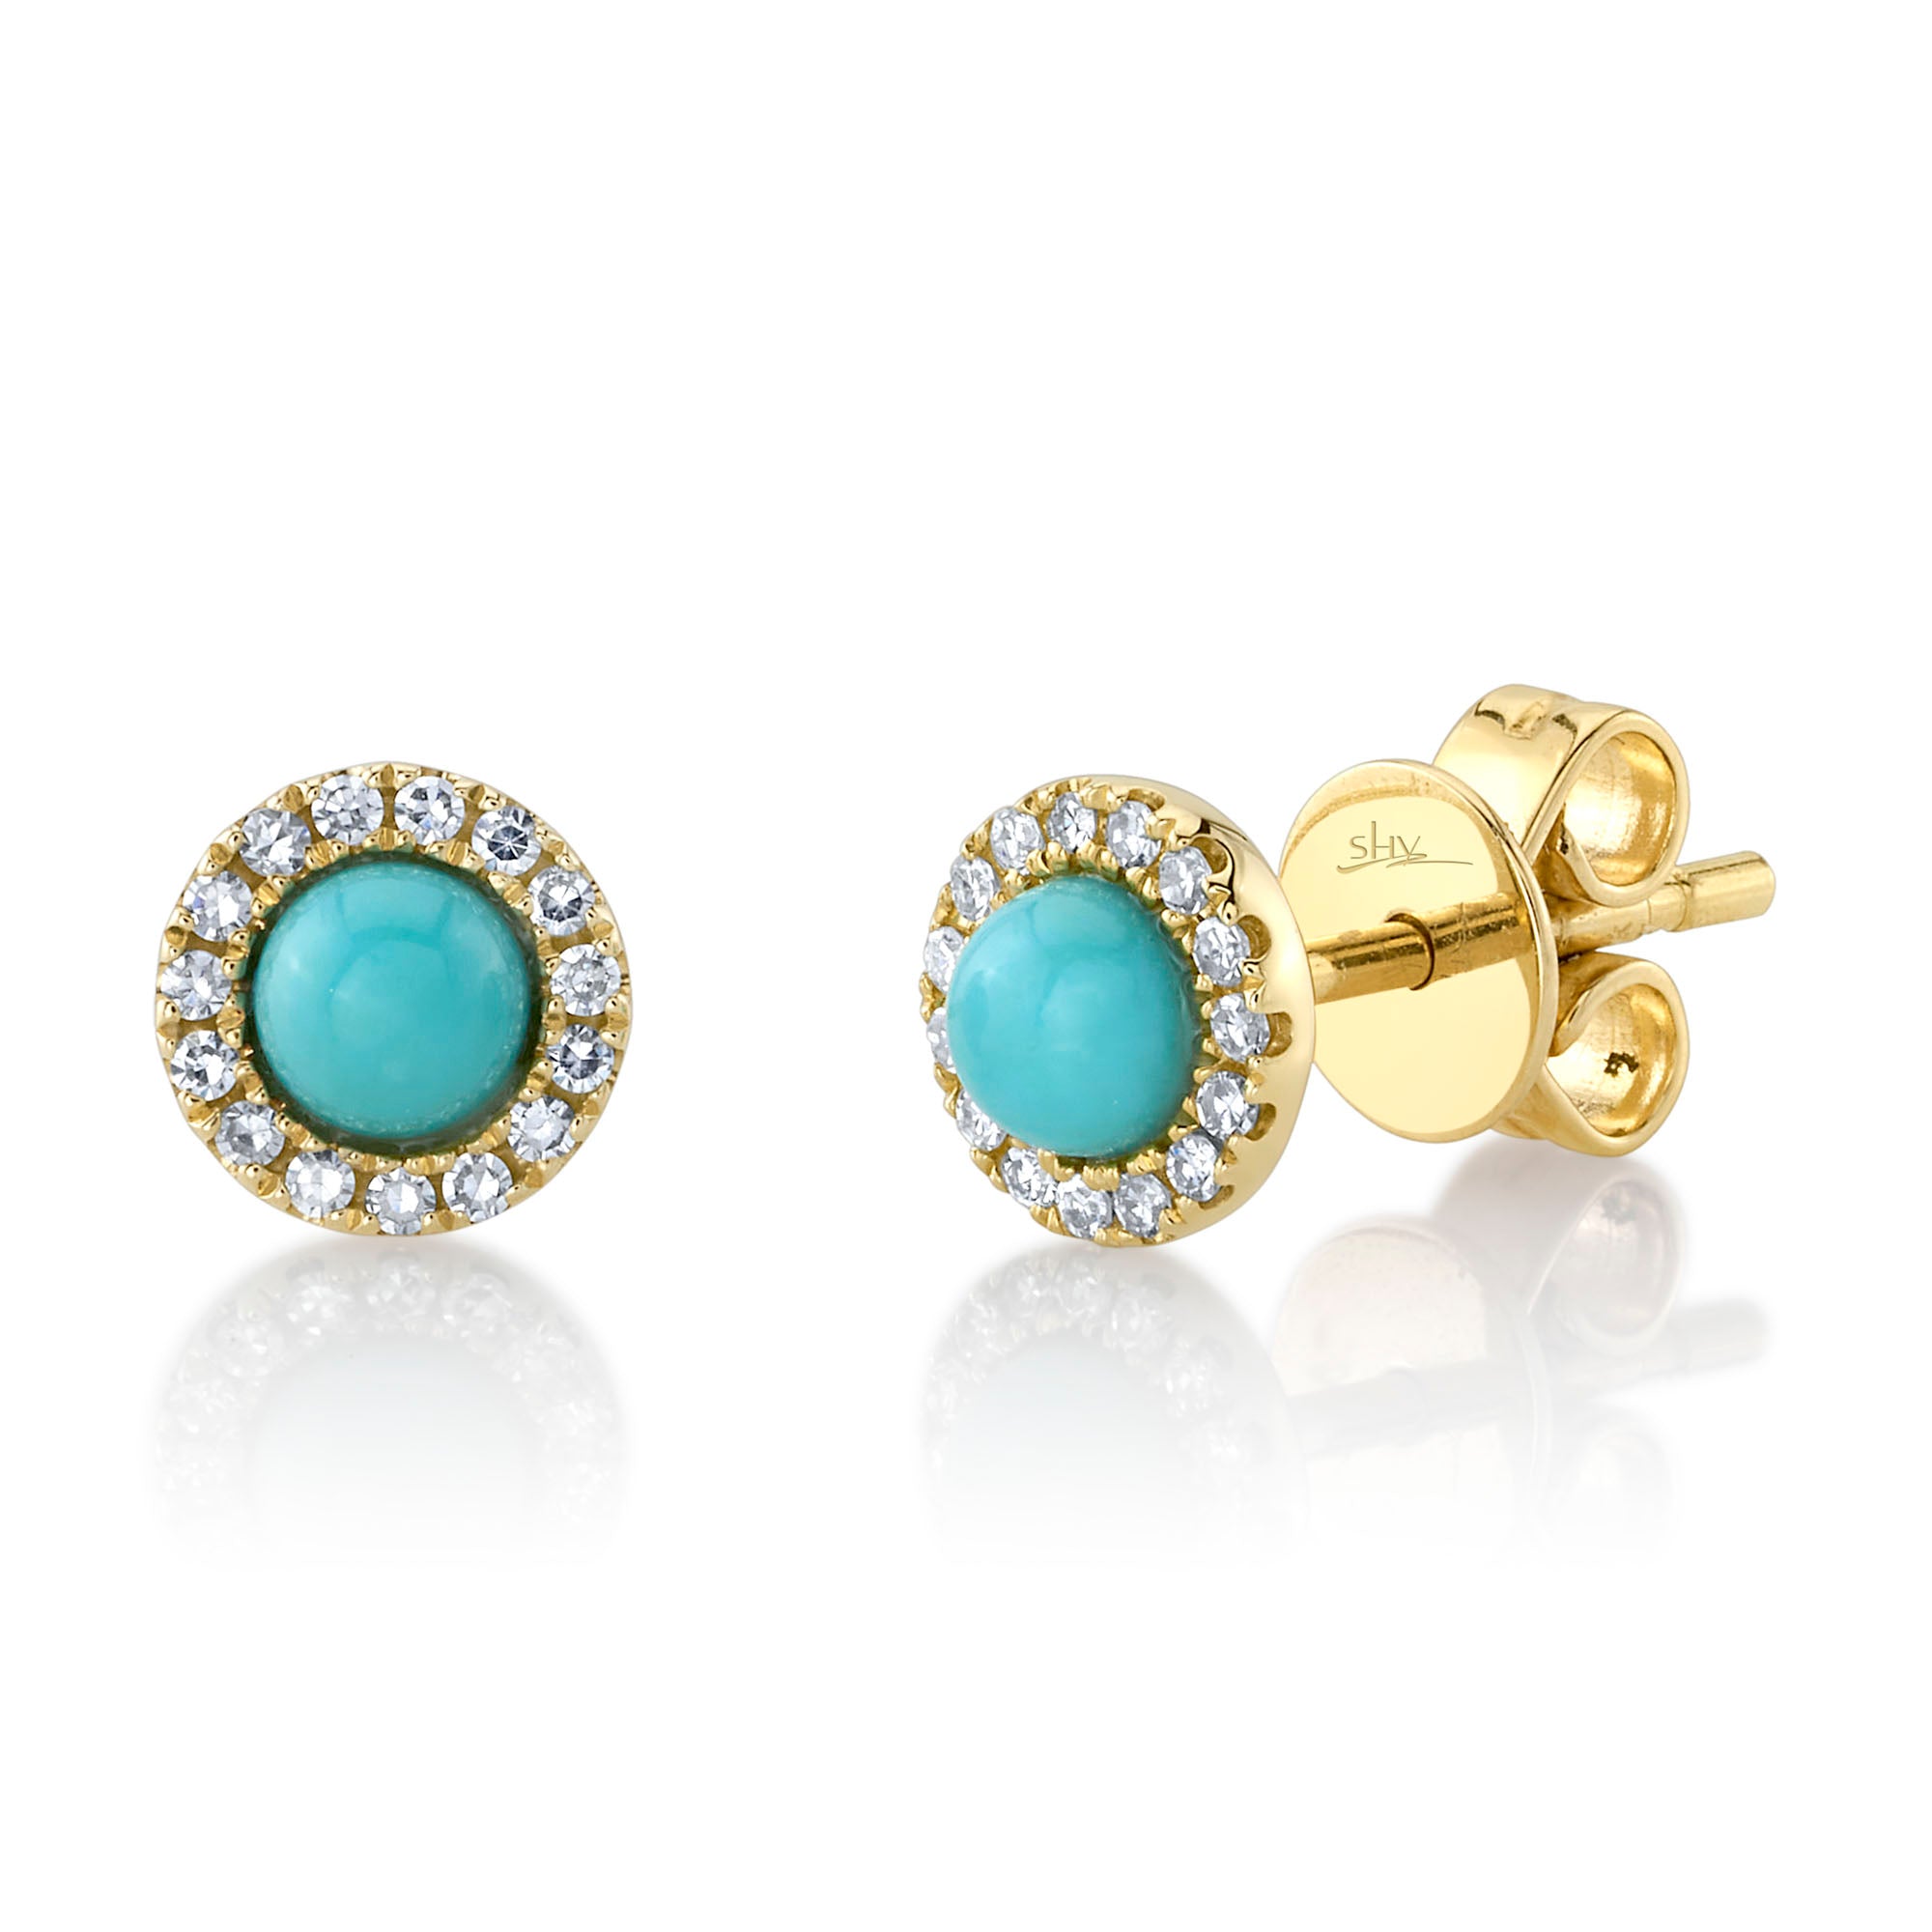 Yellow Gold Turquoise Diamond Halo Stud Earrings Earrings Gift Giving